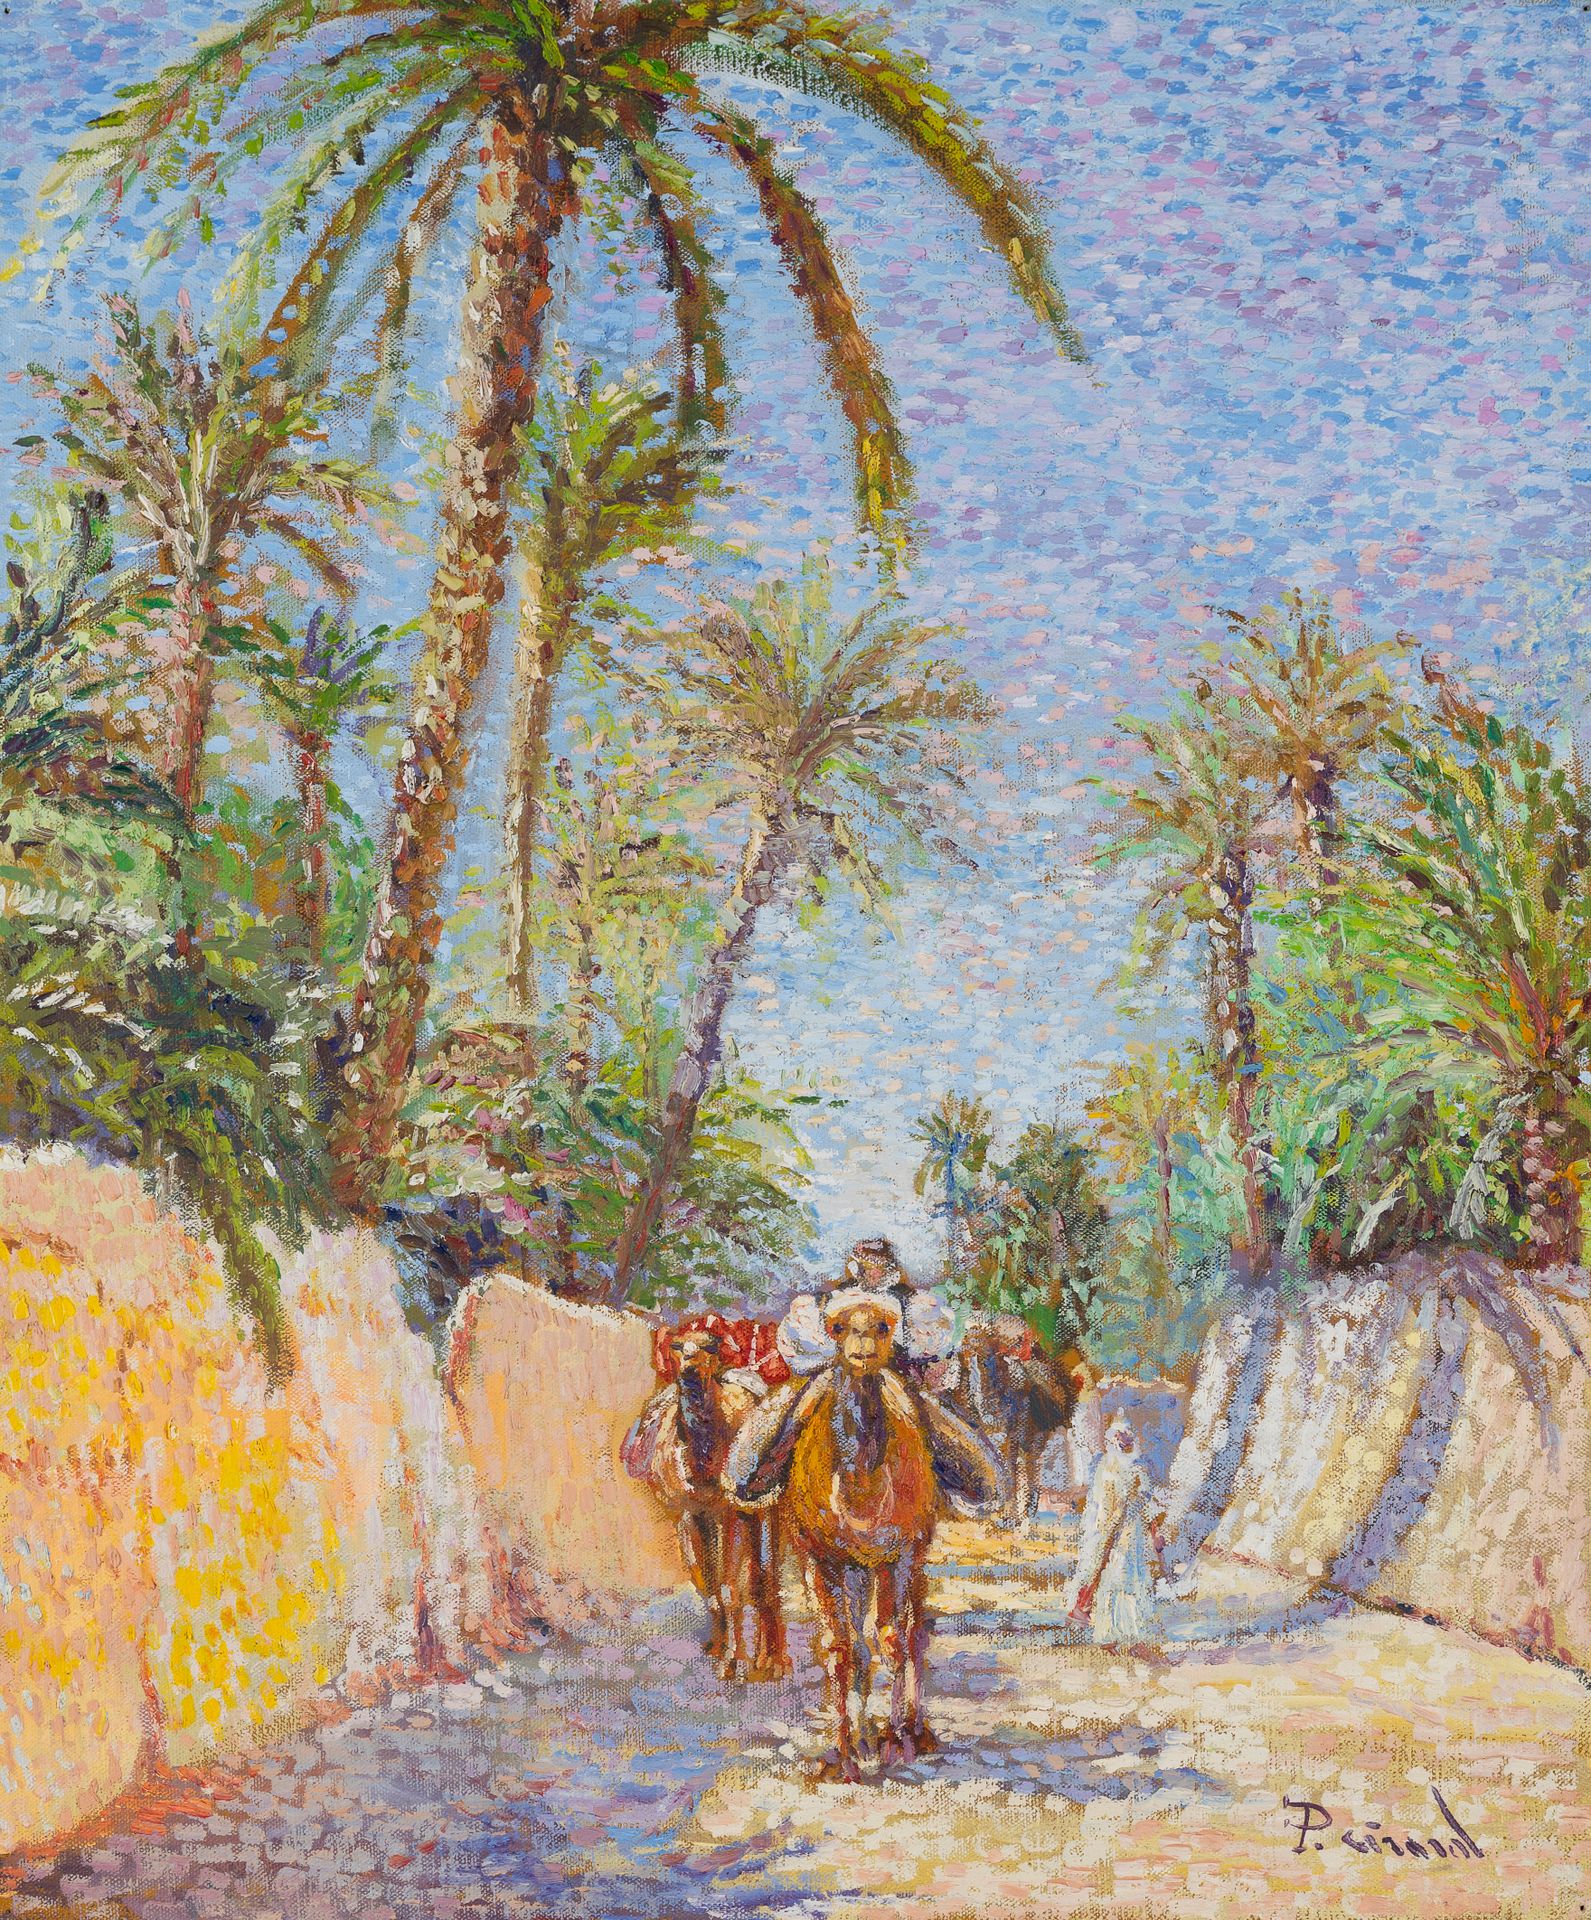 Null École orientaliste du XXè siècle

Chamelier

Huile sur toile 

55 x 46 cm